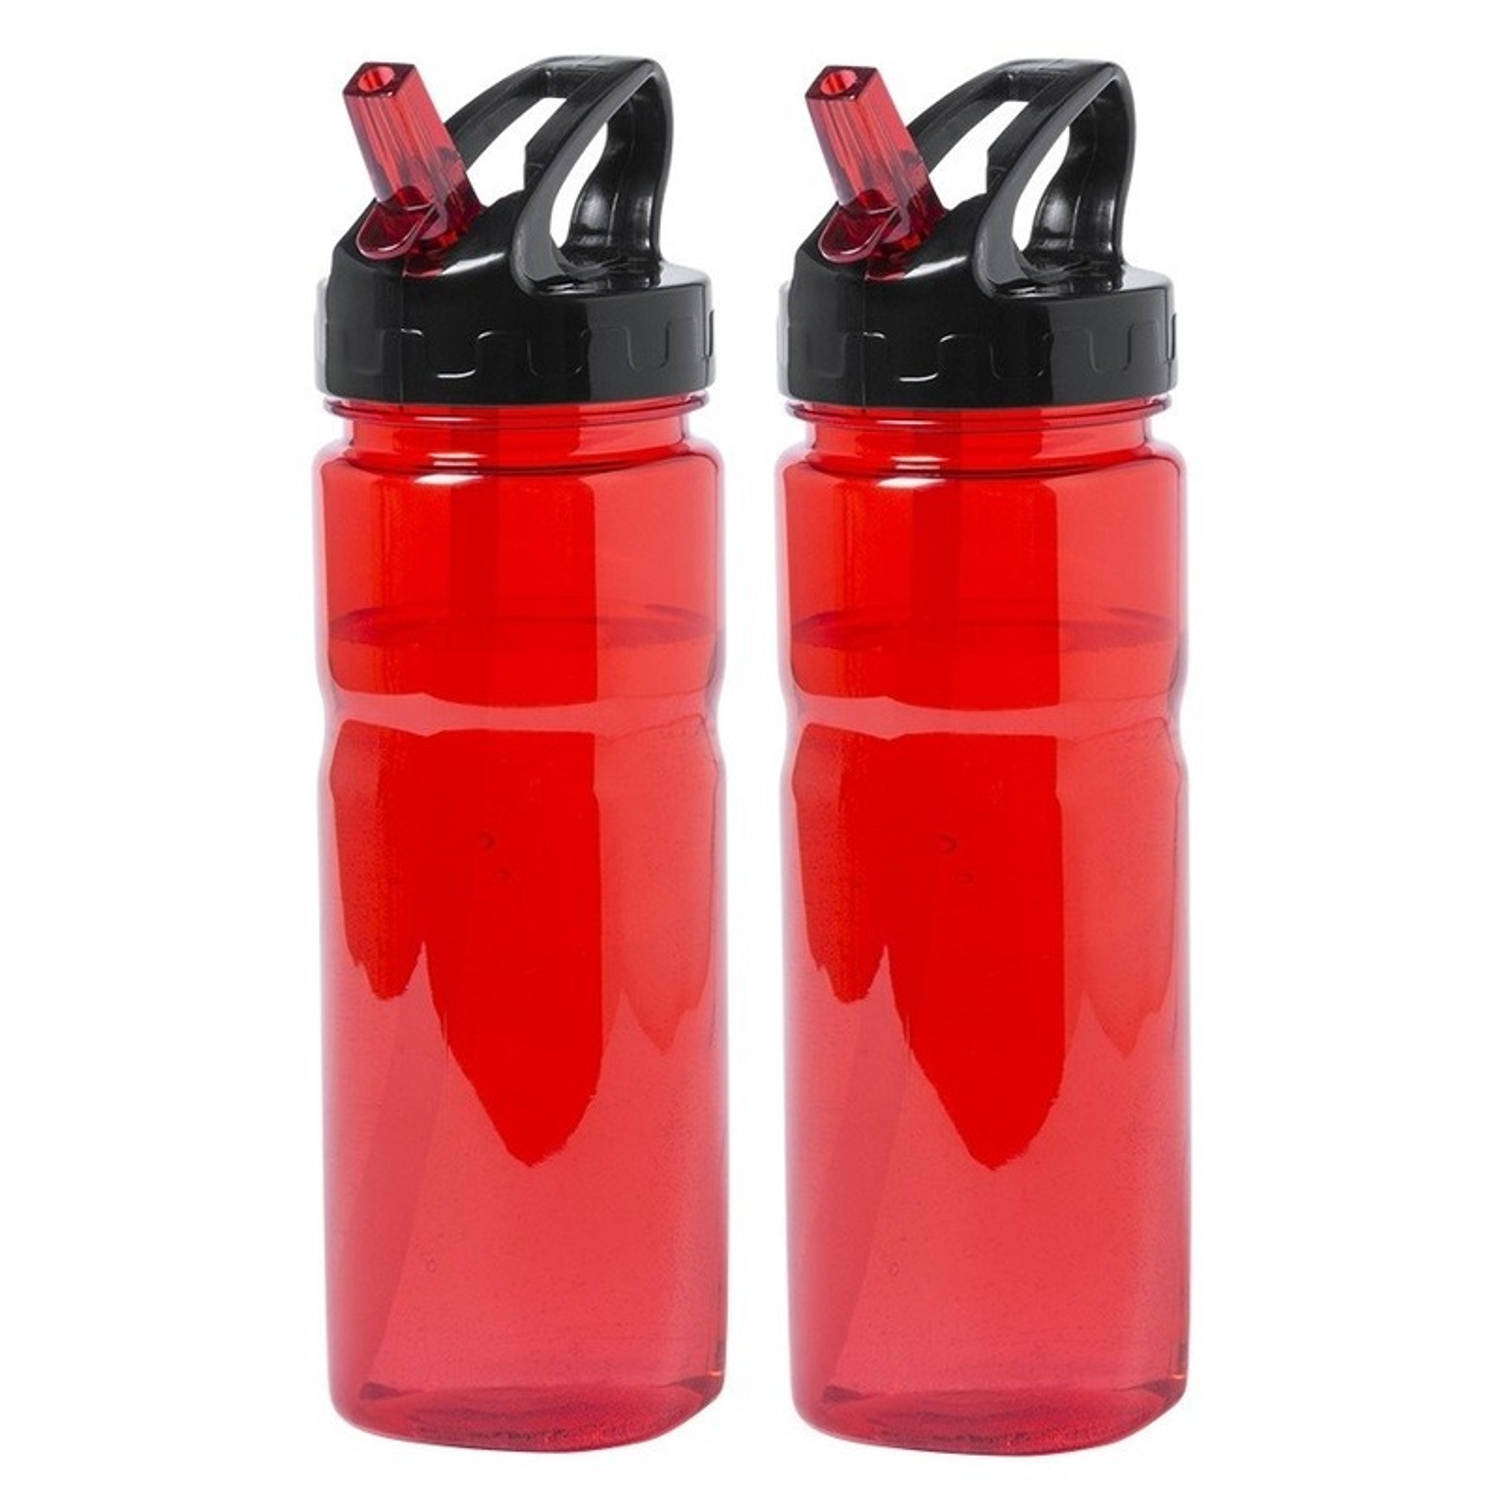 2x Drinkfles/waterfles rood met schroefdop 650 ml - Drinkflessen